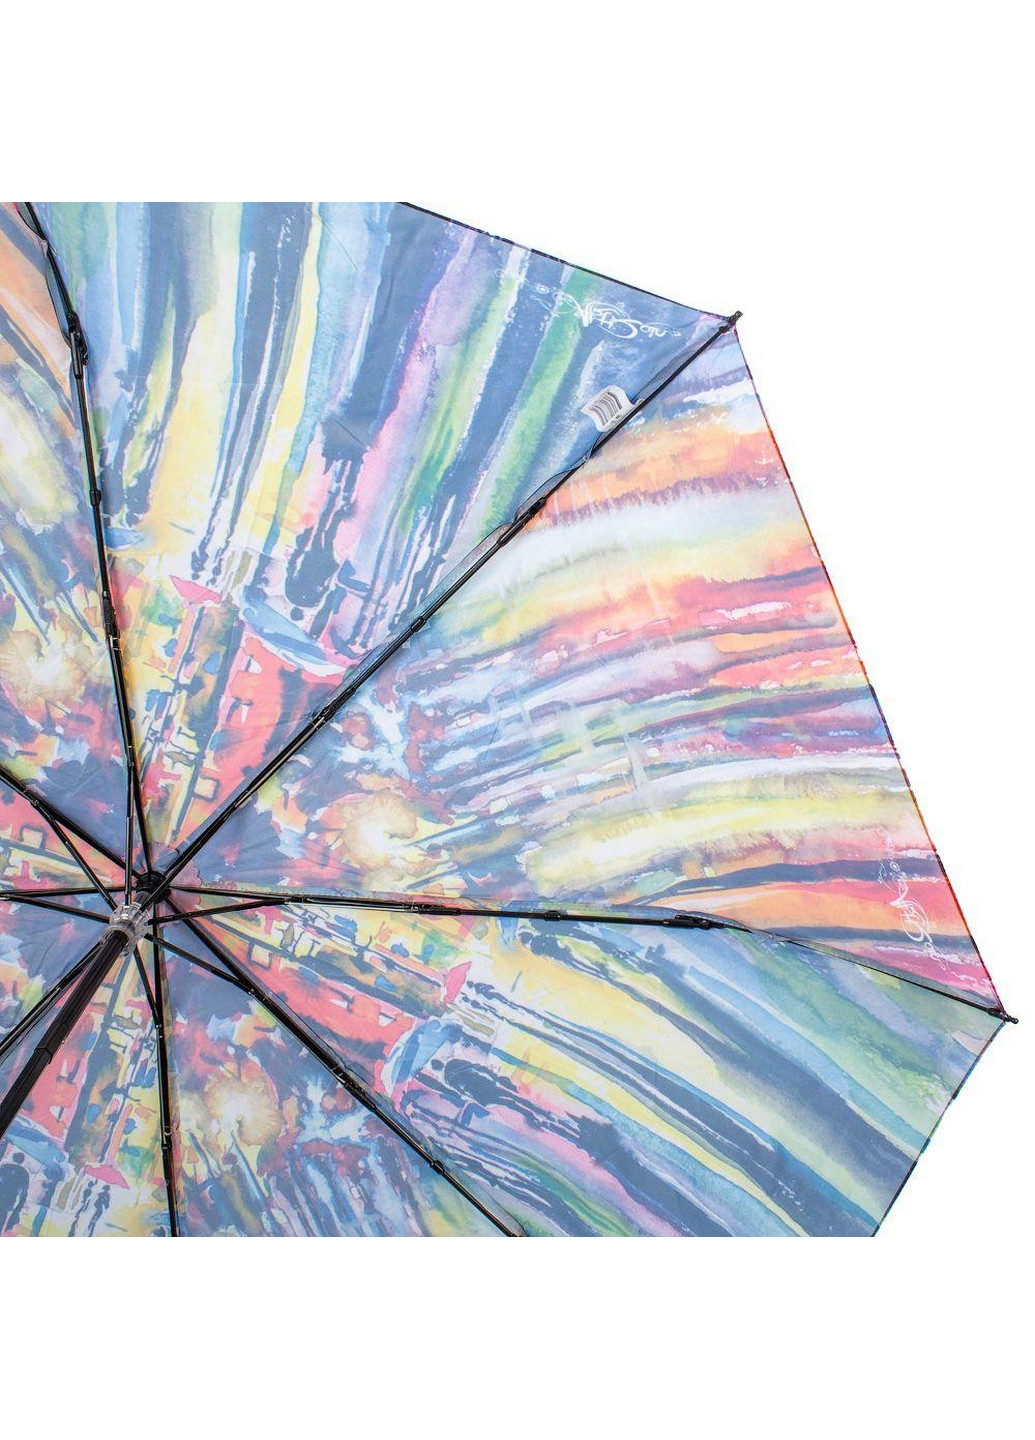 Жіноча складна парасолька механічна 98 см ArtRain (260330845)